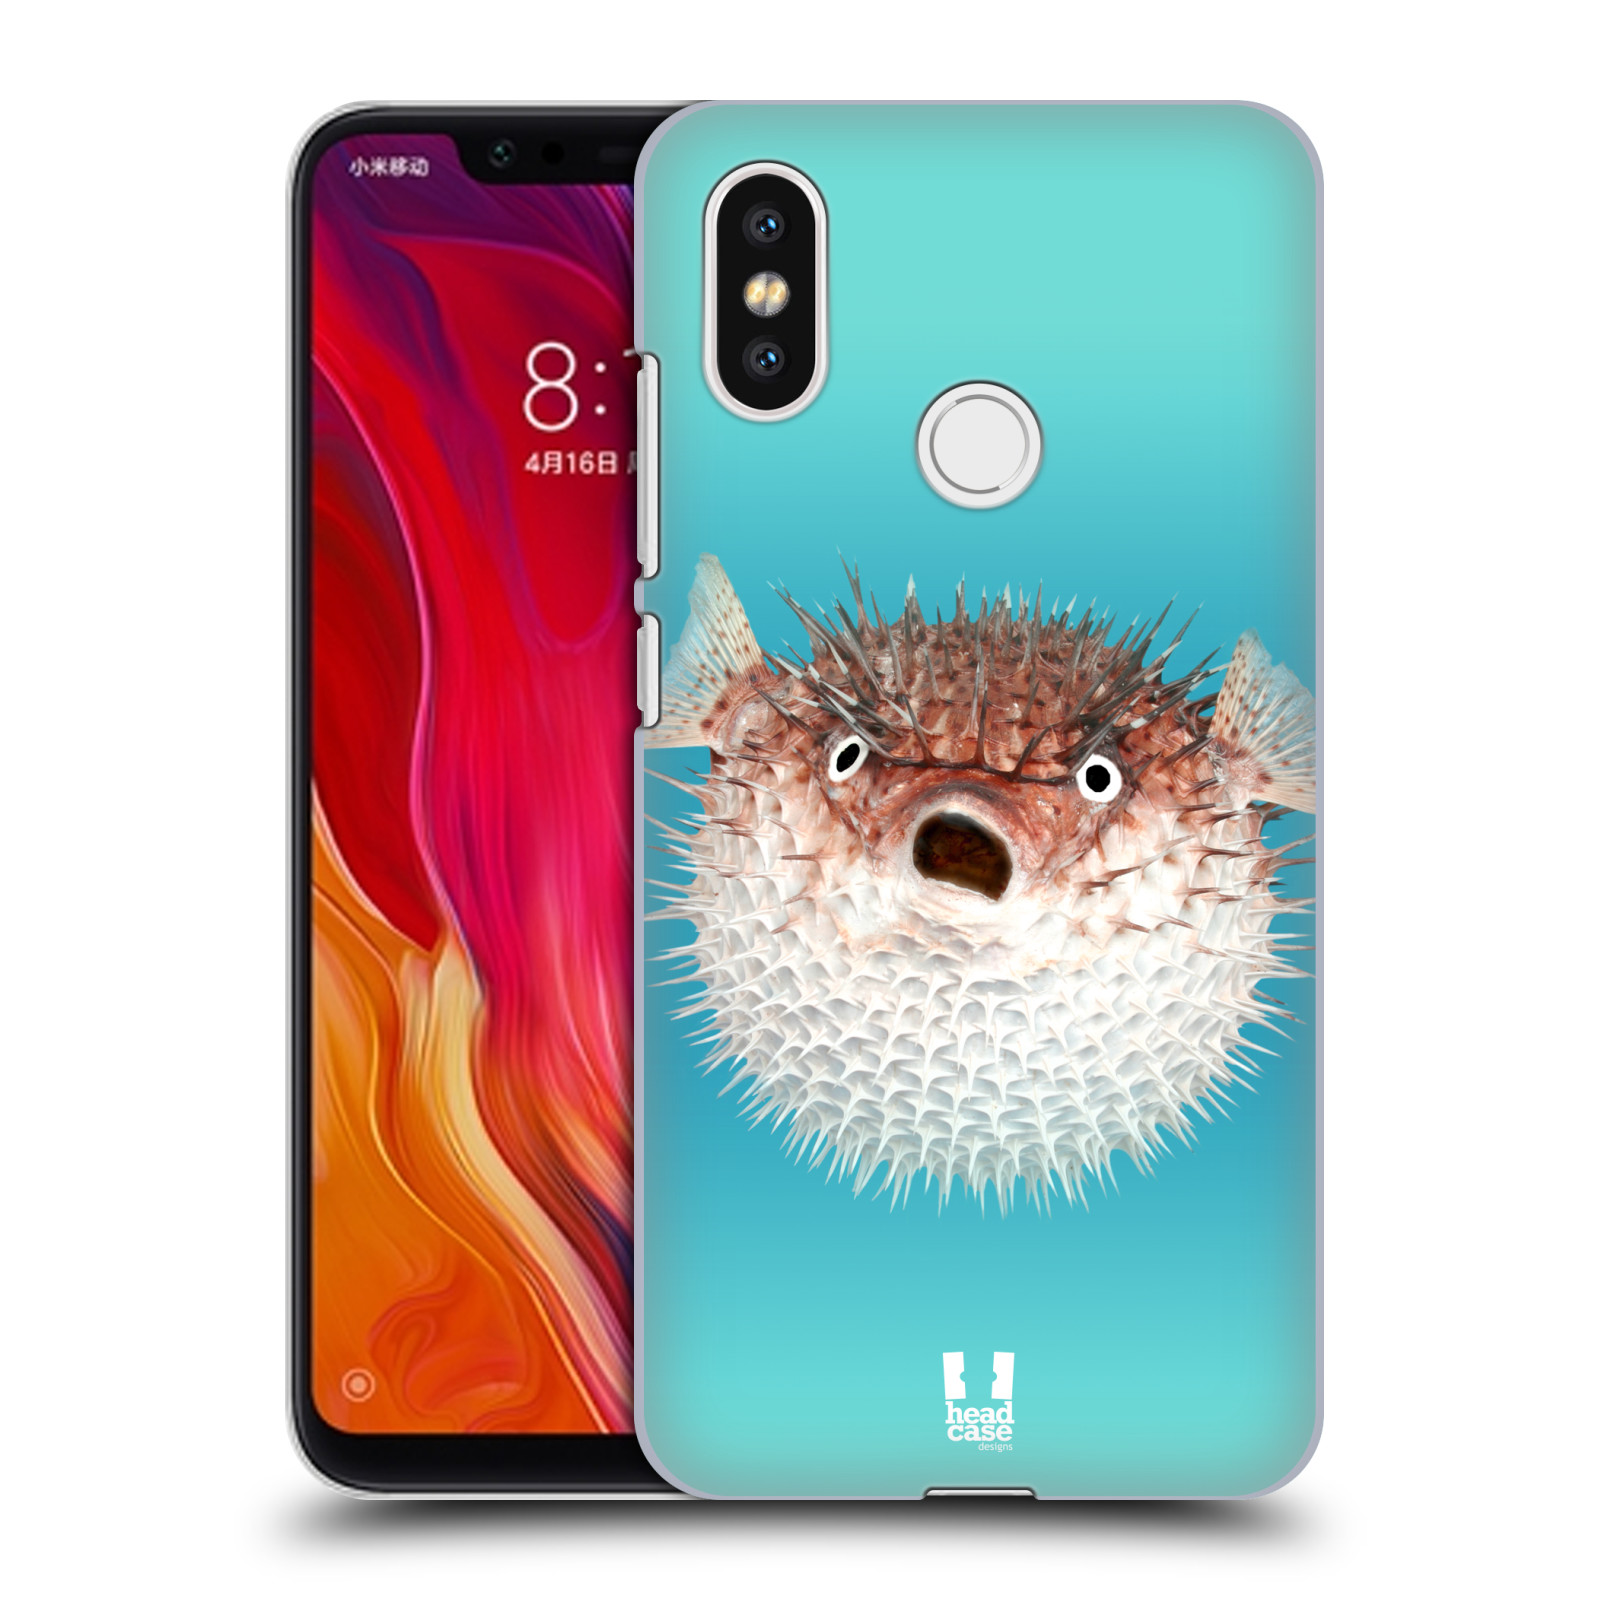 HEAD CASE plastový obal na mobil Xiaomi Mi 8 vzor slavná zvířata foto ježík hnědý